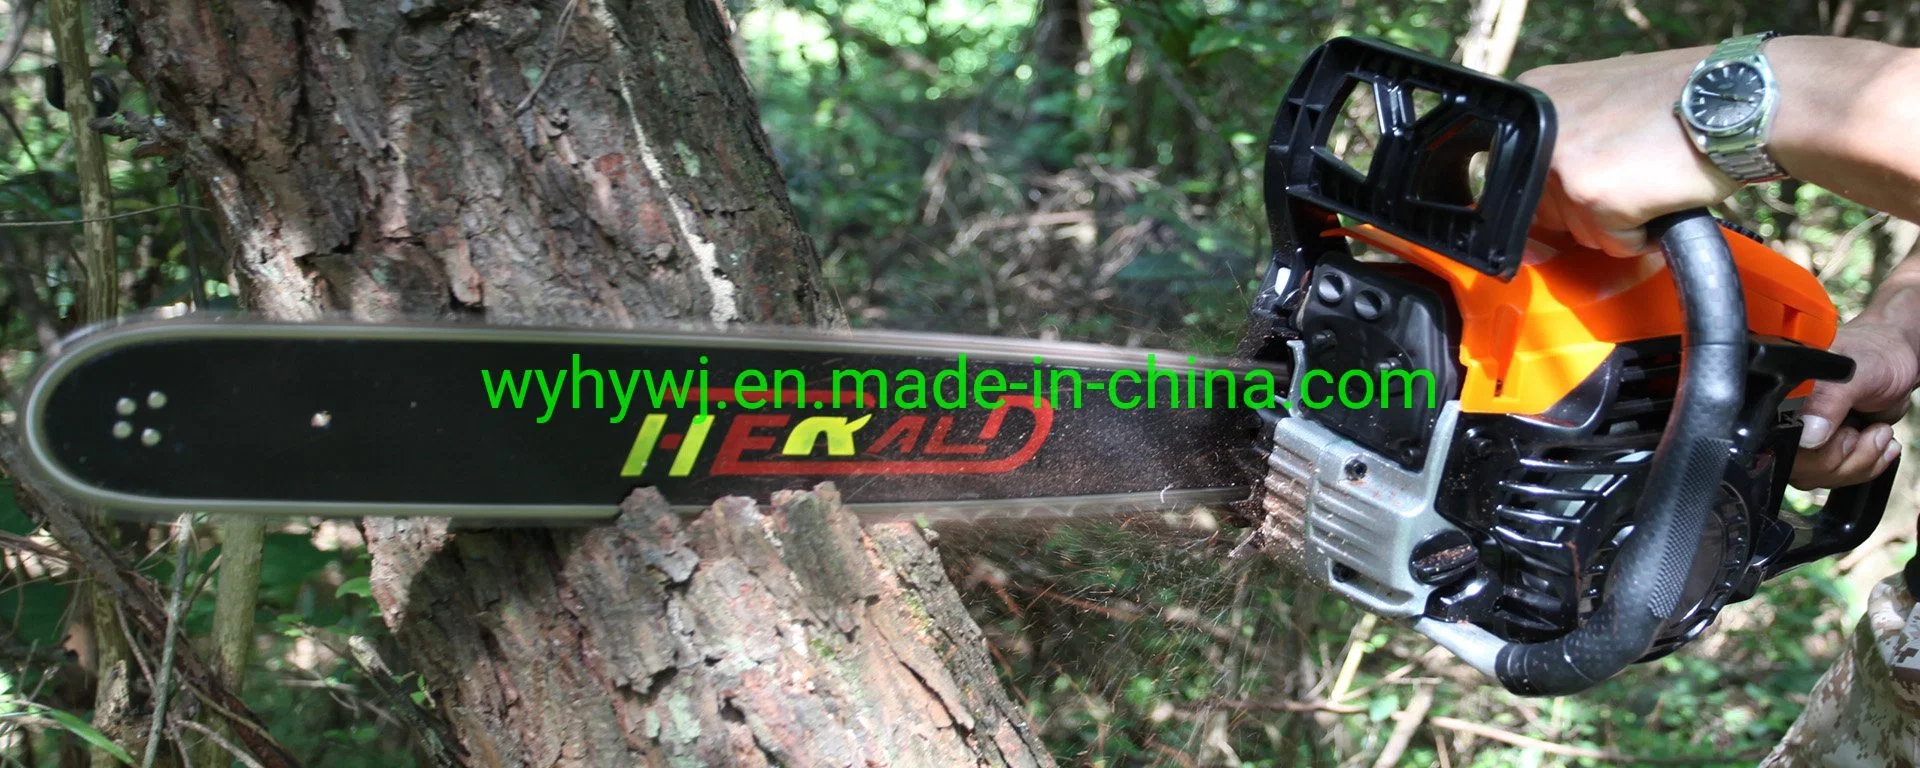 منشار سلسلة البنزين الشهيرة ذات الجودة العالية الممتازة ماكينة تقطيع الأخشاب/الأشجار HY-58n 52cc Hot Seller خشبة خشبة خشبة خشبة خشبة/شجرة الأداة